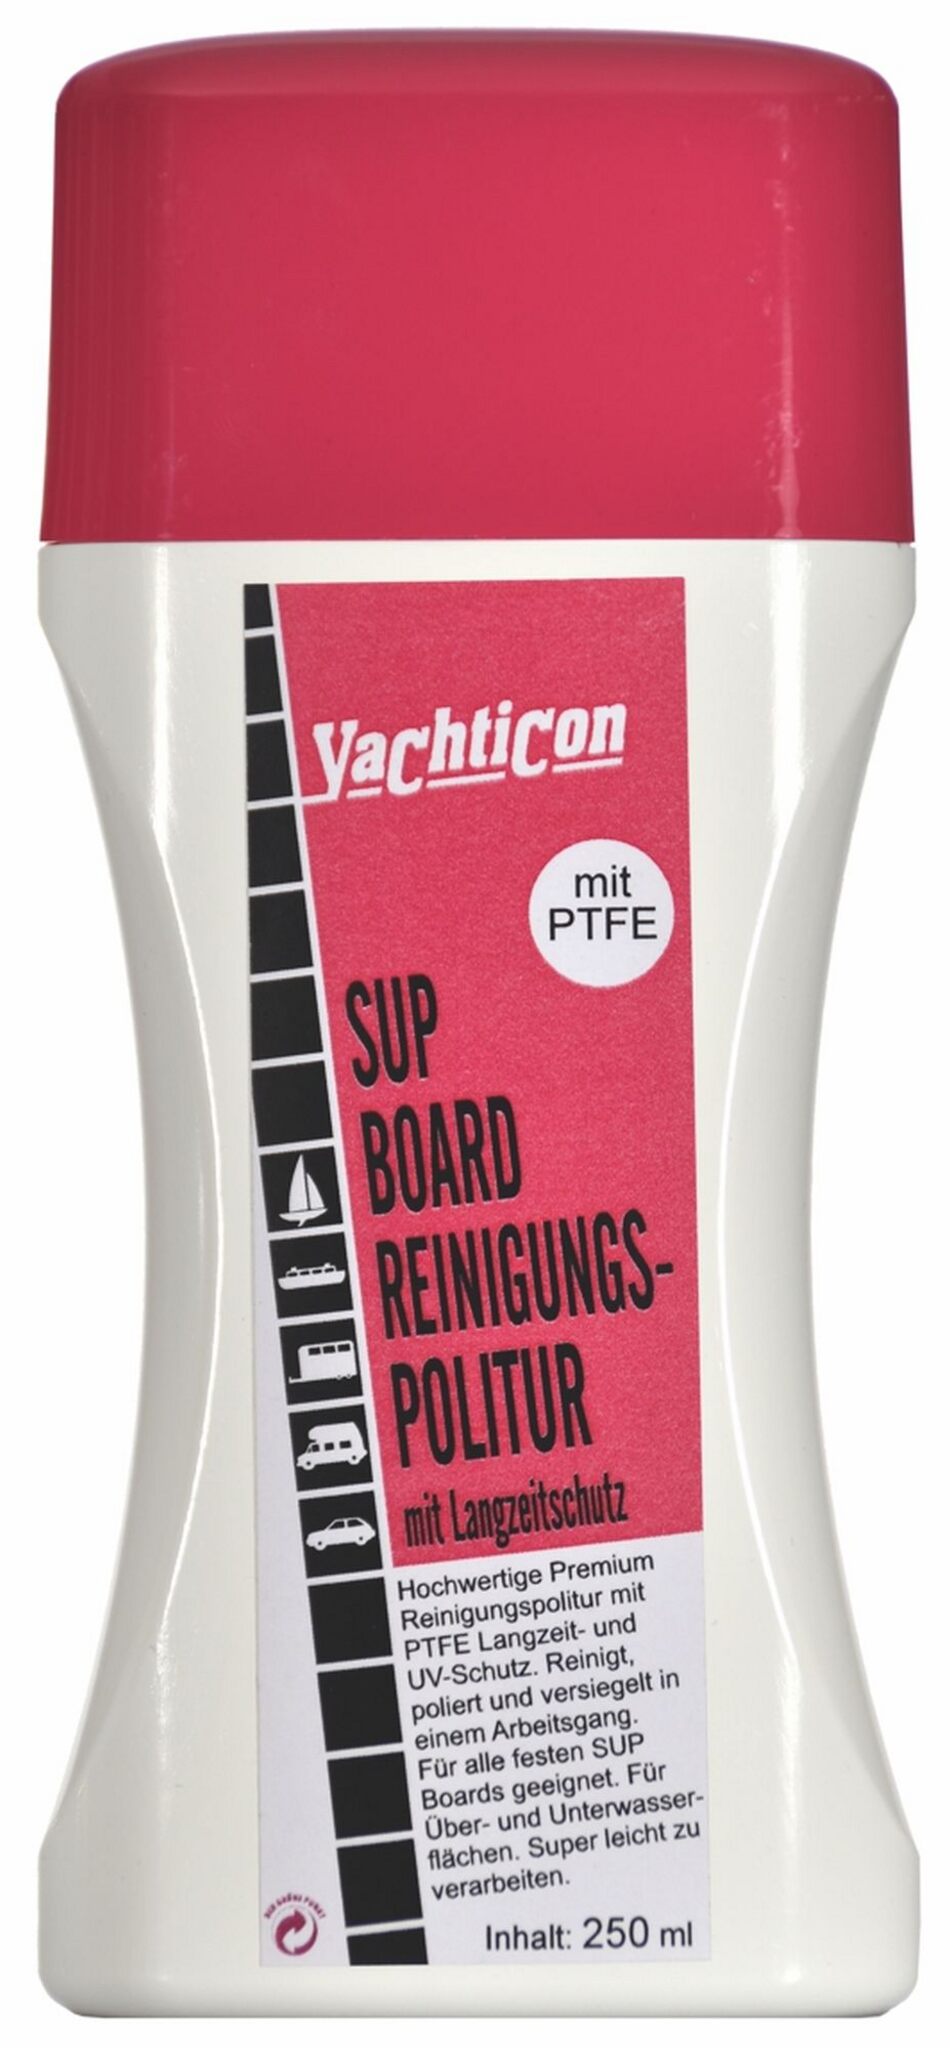 Yachticon SUP-Board Reinigungspolitur 250 ml